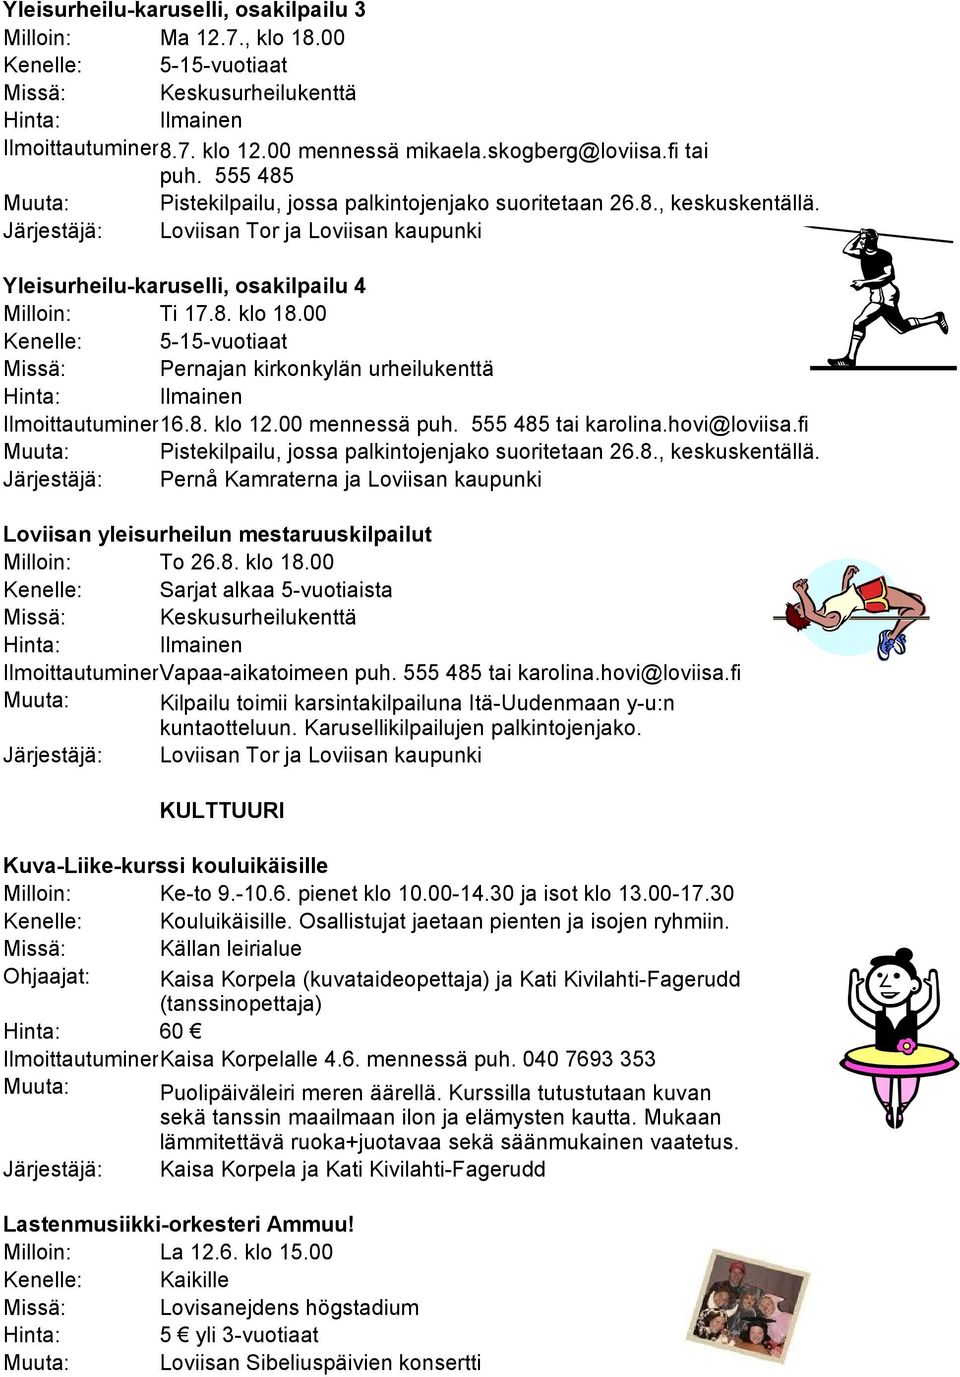 00 Kenelle: 5-15-vuotiaat Missä: Pernajan kirkonkylän urheilukenttä Ilmoittautuminen:16.8. klo 12.00 mennessä puh. 555 485 tai karolina.hovi@loviisa.